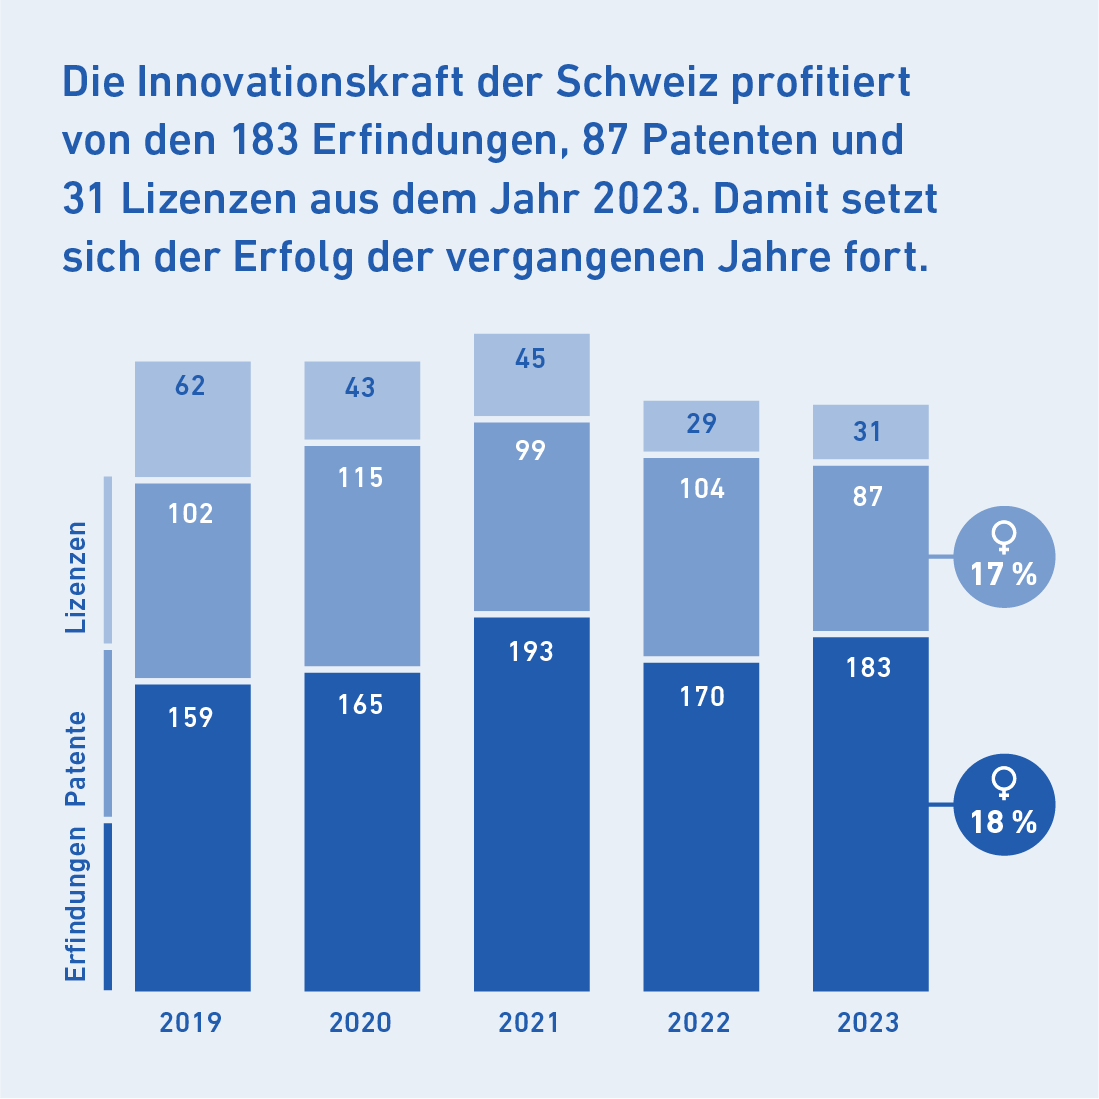 Die Innovationskraft der Schweiz profitiert von den 183 Erfindungen, 87 Patenten und 31 Lizenzen aus dem Jahr 2023. Damit setzt sich der Erfolg der vergangenen Jahre fort.